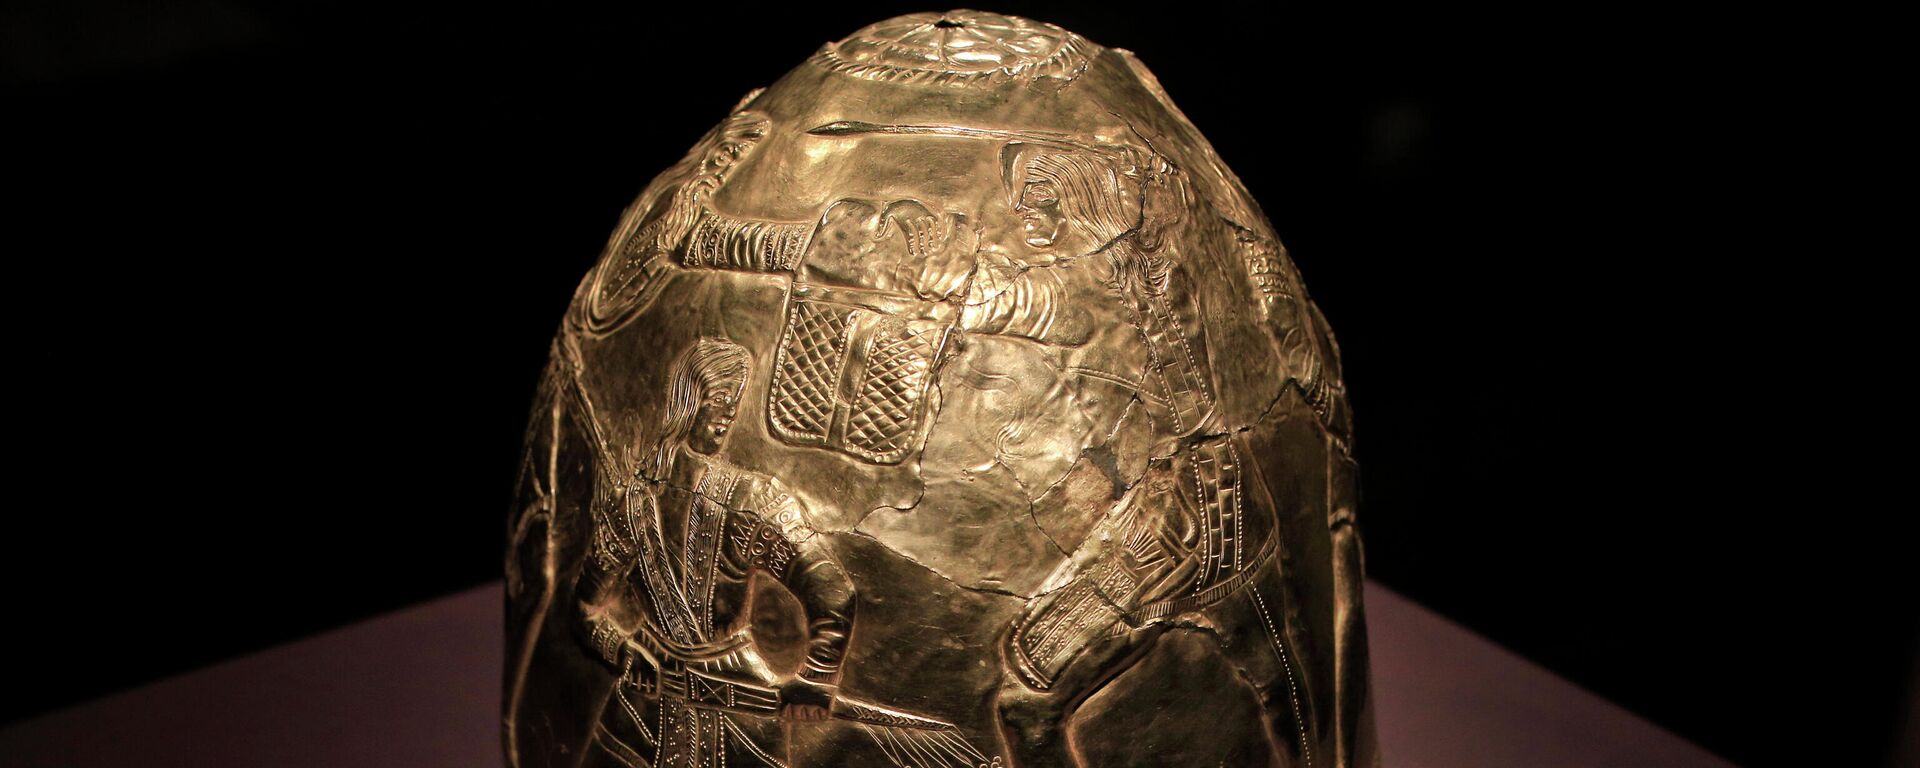 Cкифский золотой шлем в историческом музее Алларда Пирсона в Амстердаме - Sputnik Литва, 1920, 26.10.2021